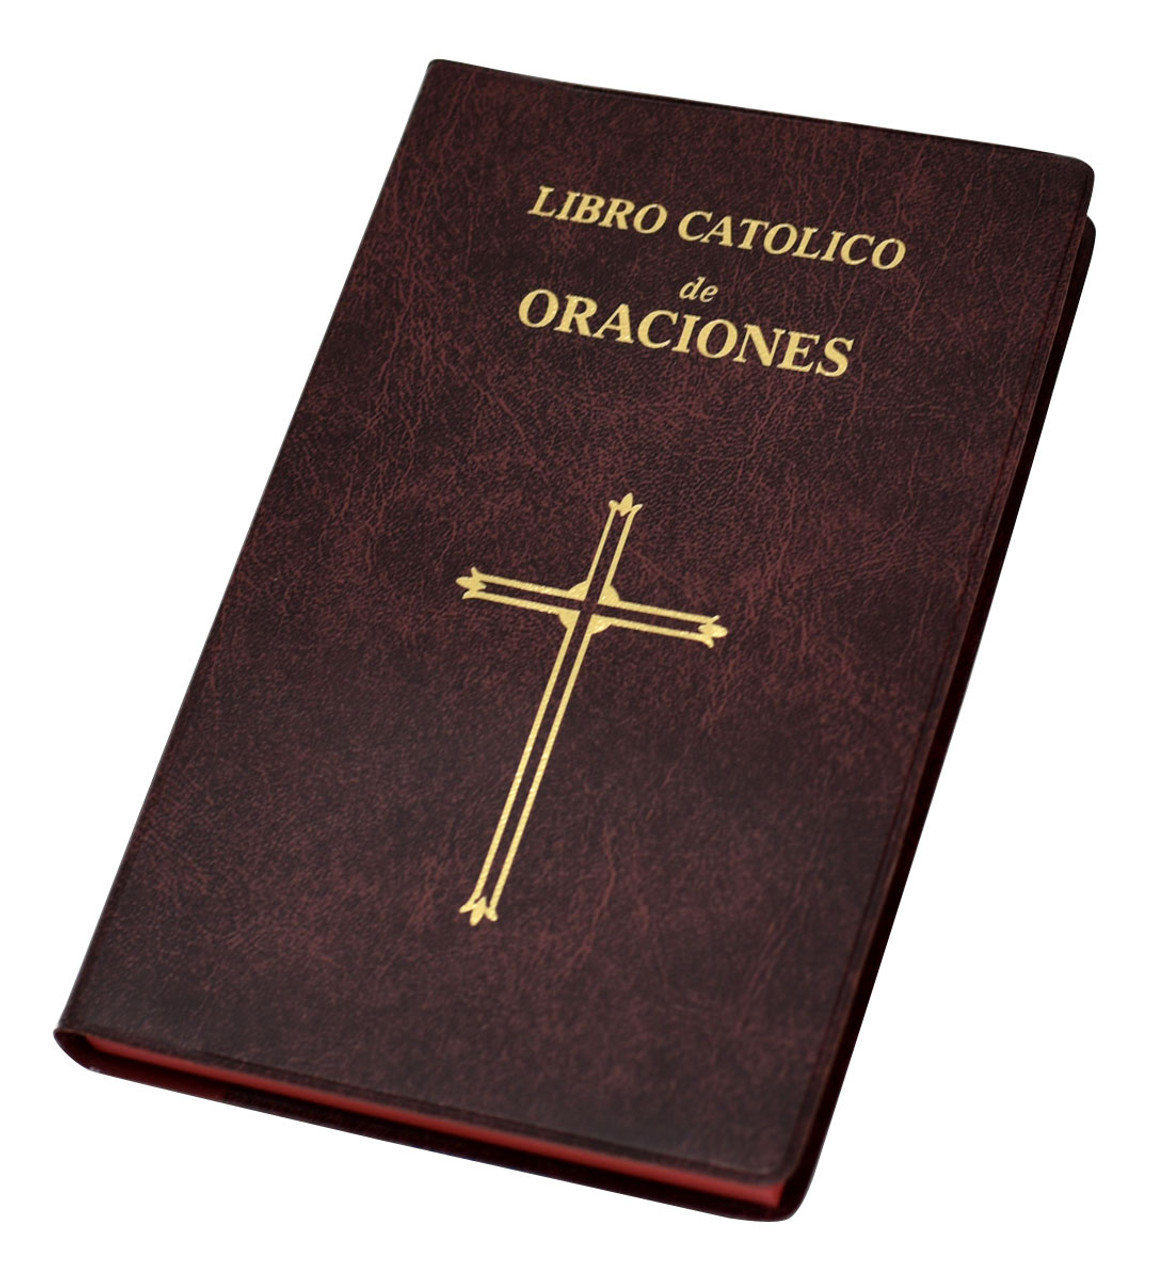 Libro Catolico De Oraciones - Catholic Book of Prayers - [Consumer]Autom